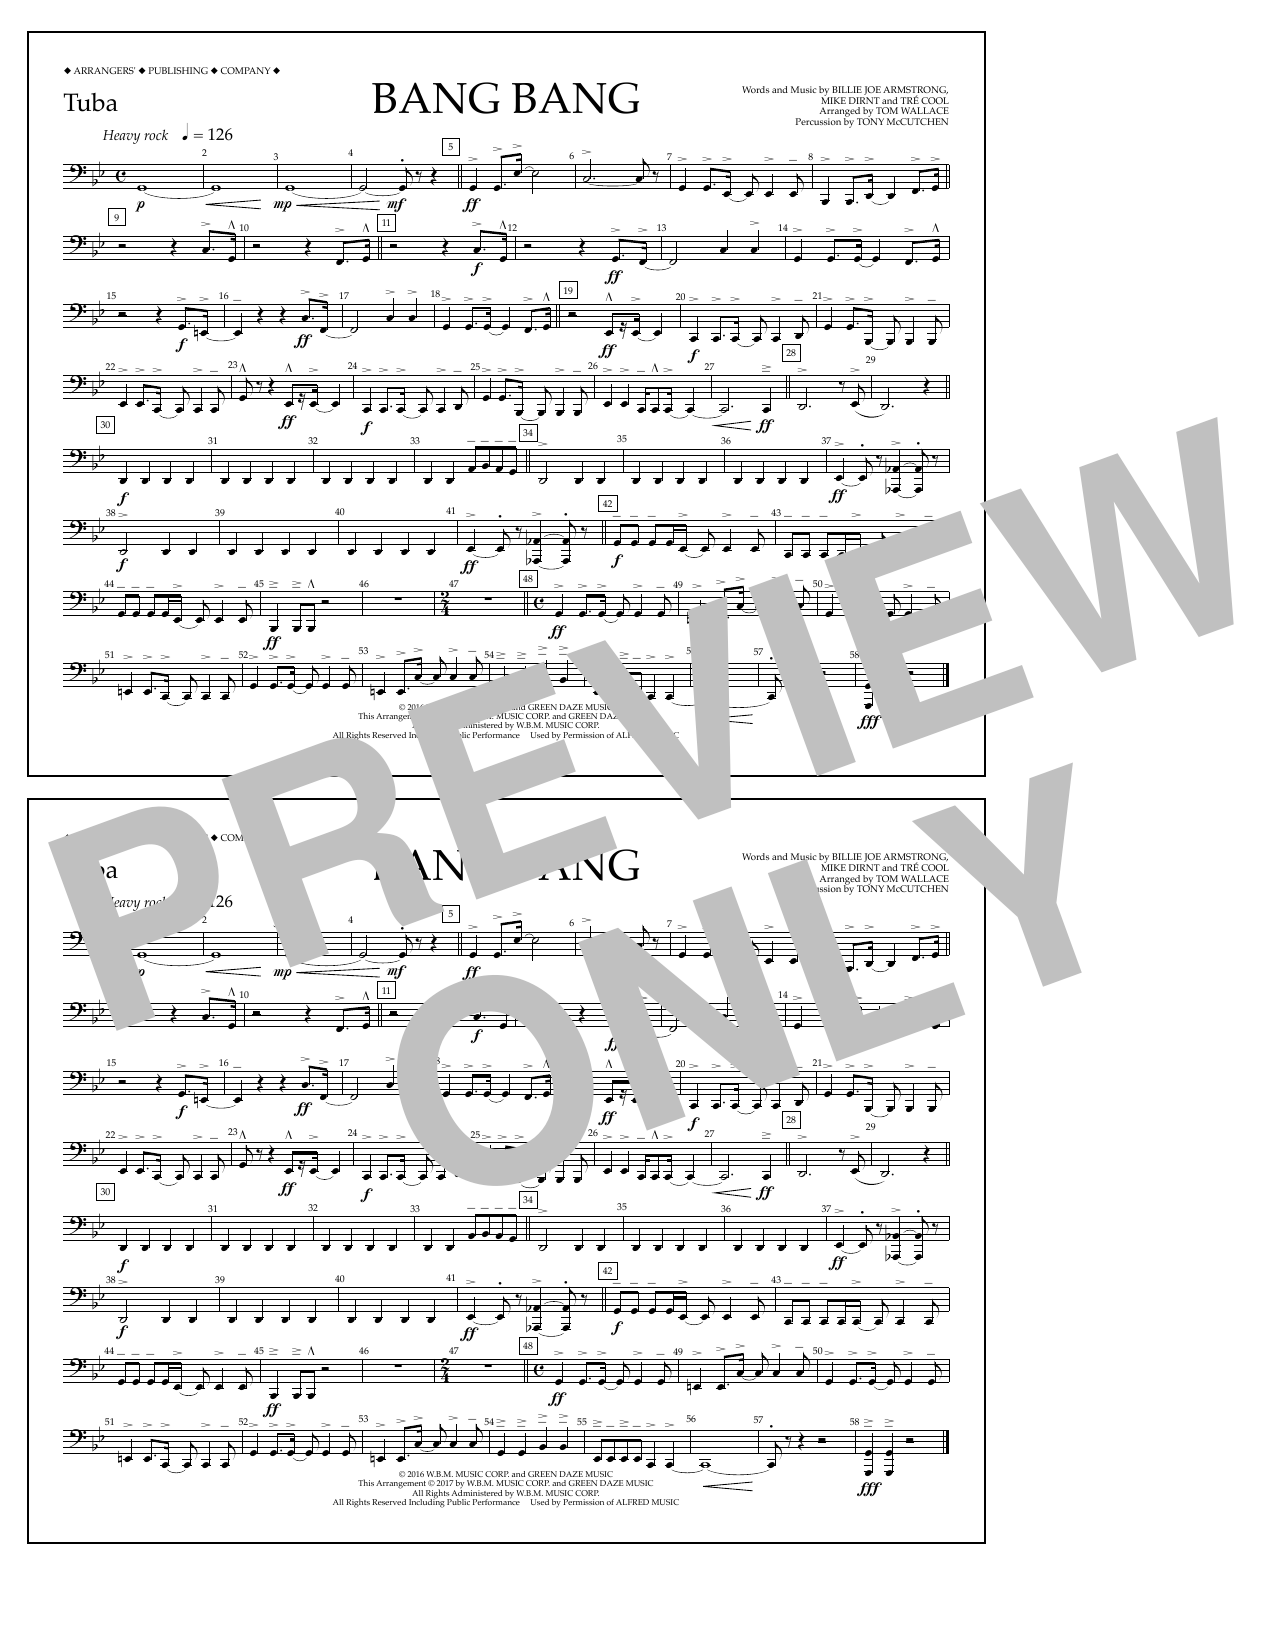 Tom Wallace Bang Bang - Tuba Sheet Music Notes & Chords for Marching Band - Download or Print PDF